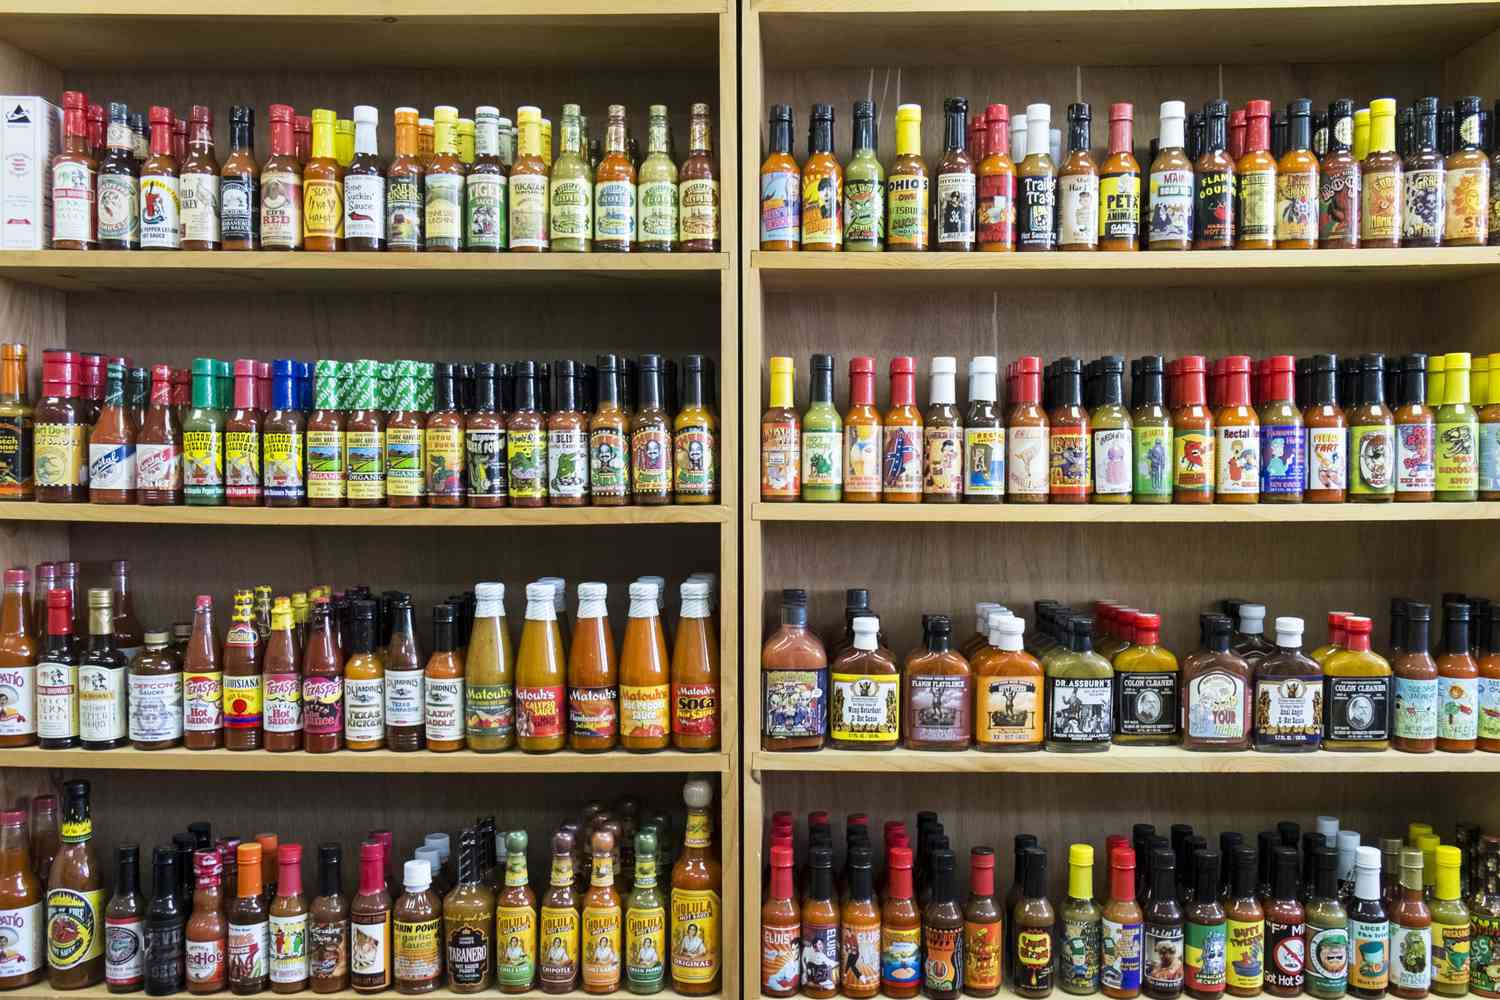 jars of hot sauce on shelf